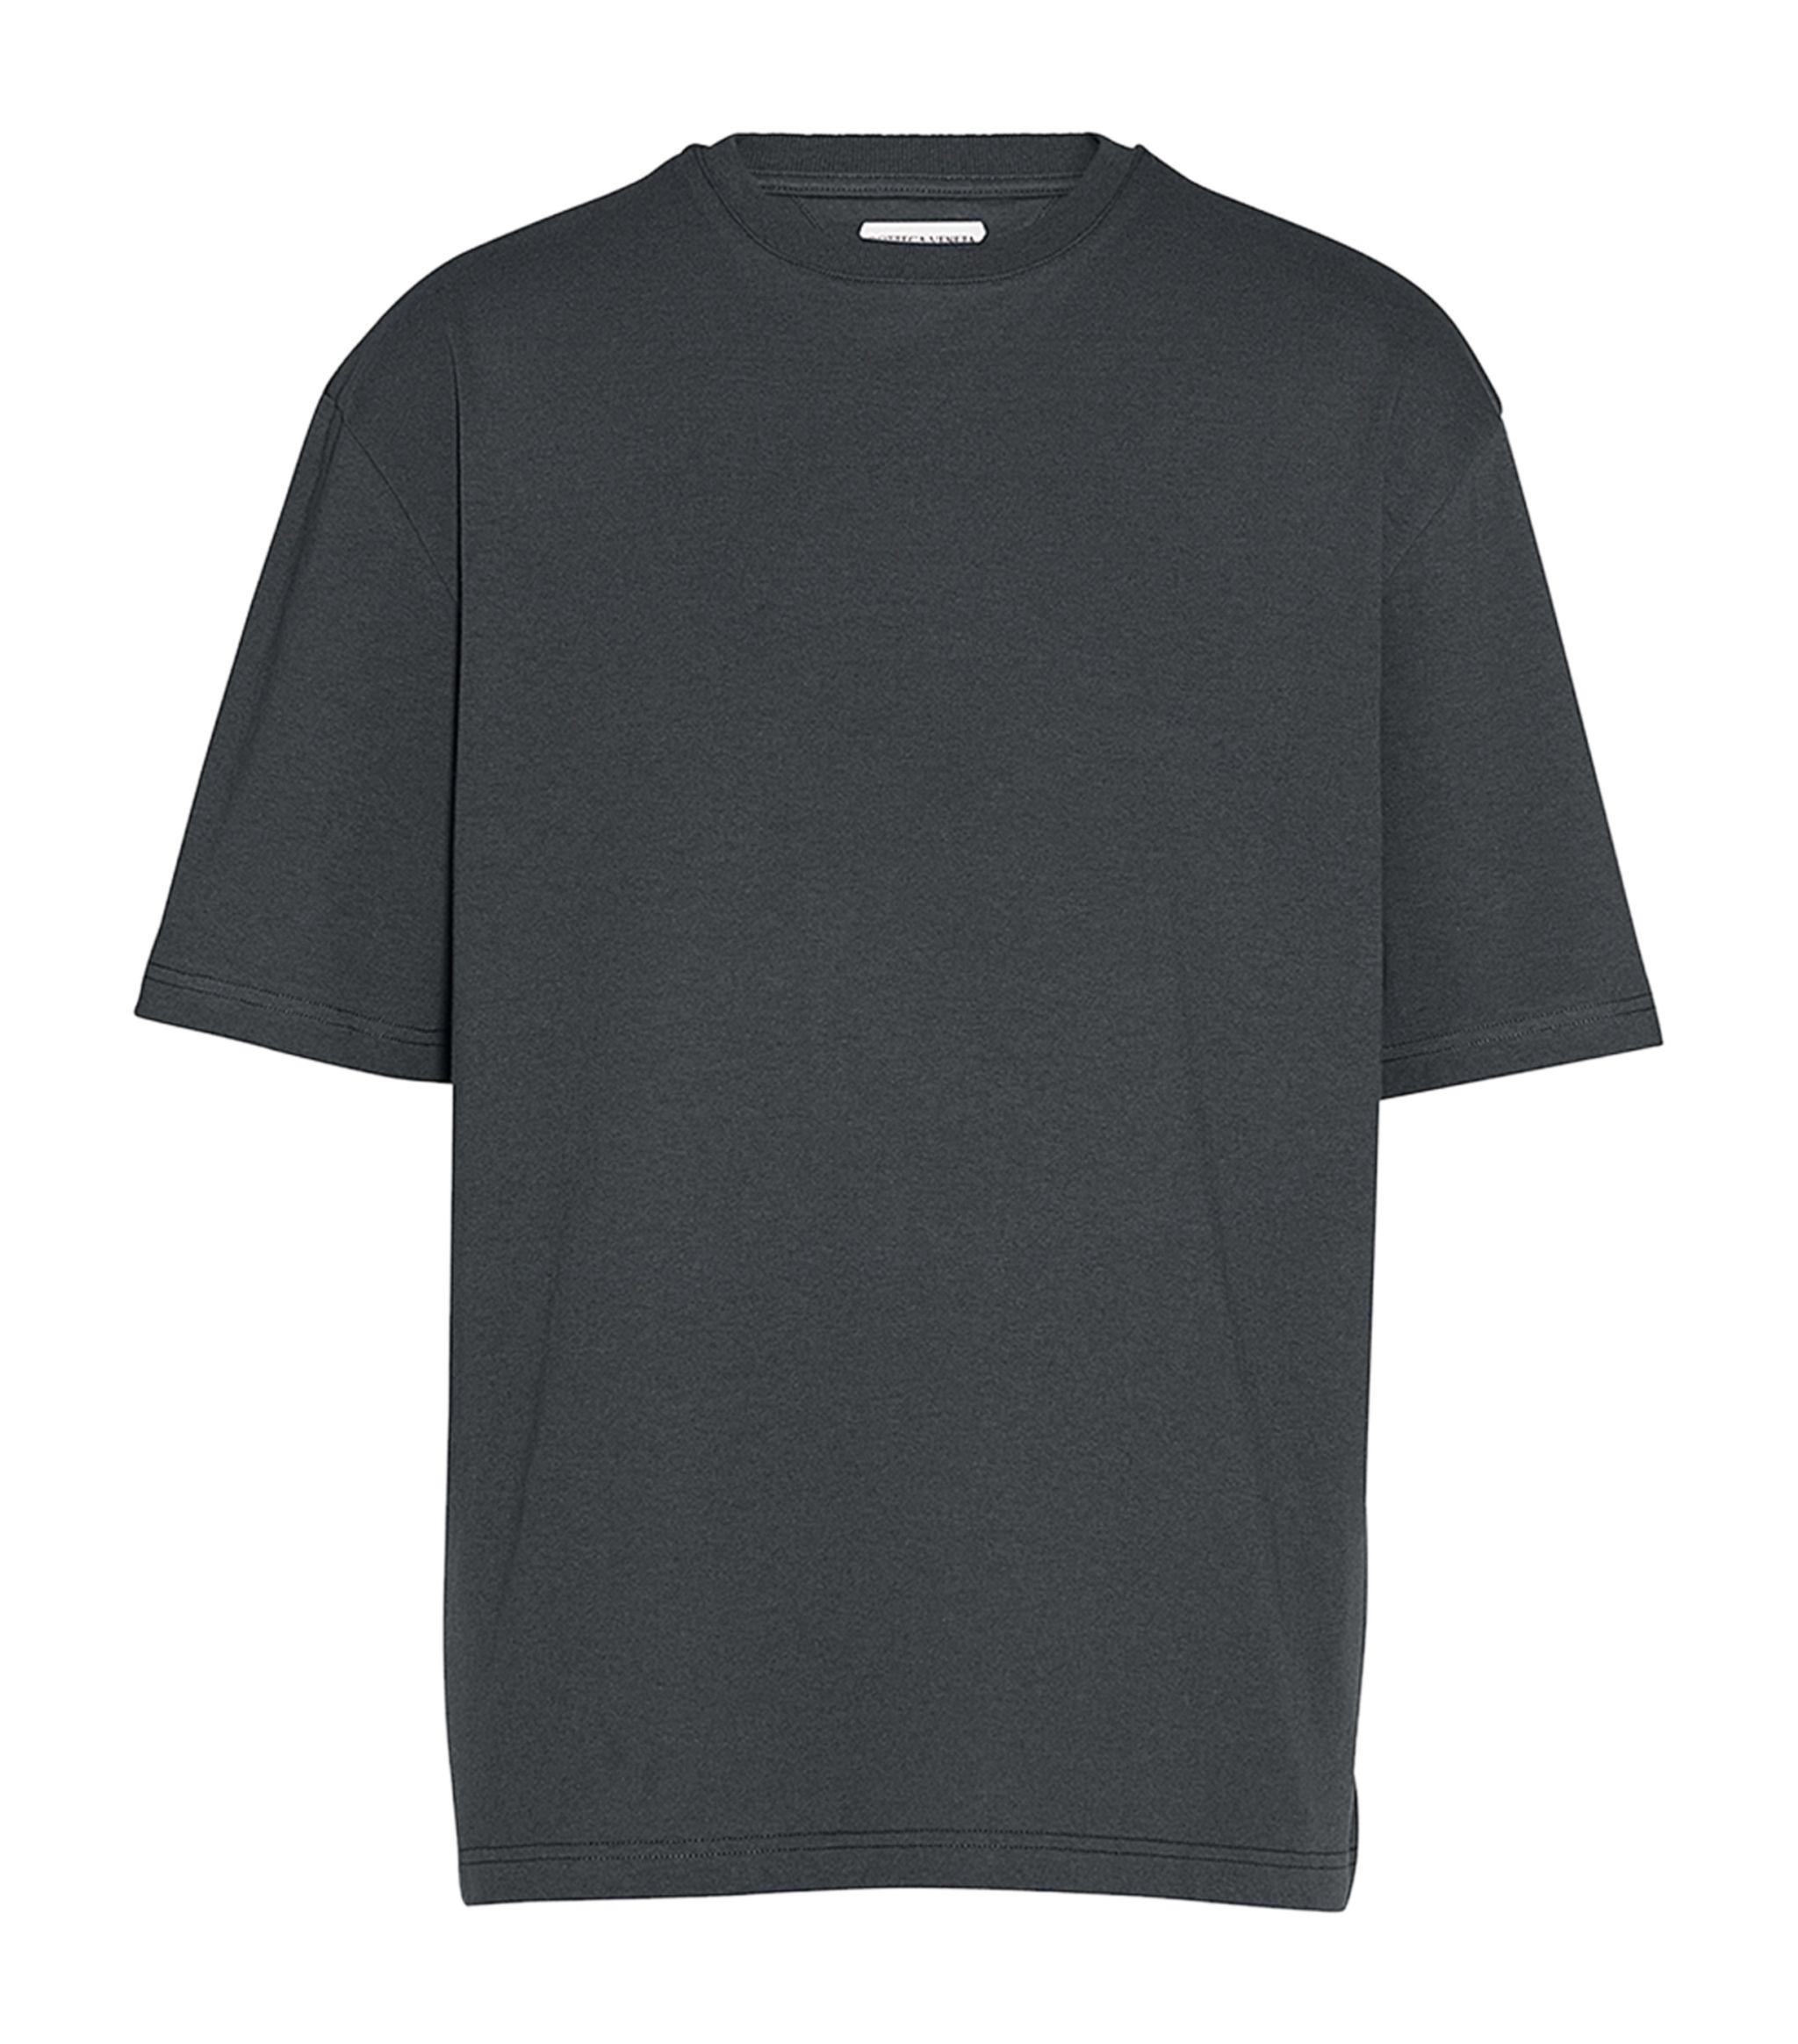 Bottega Veneta Cotton T-shirt in Gray for Men - Lyst